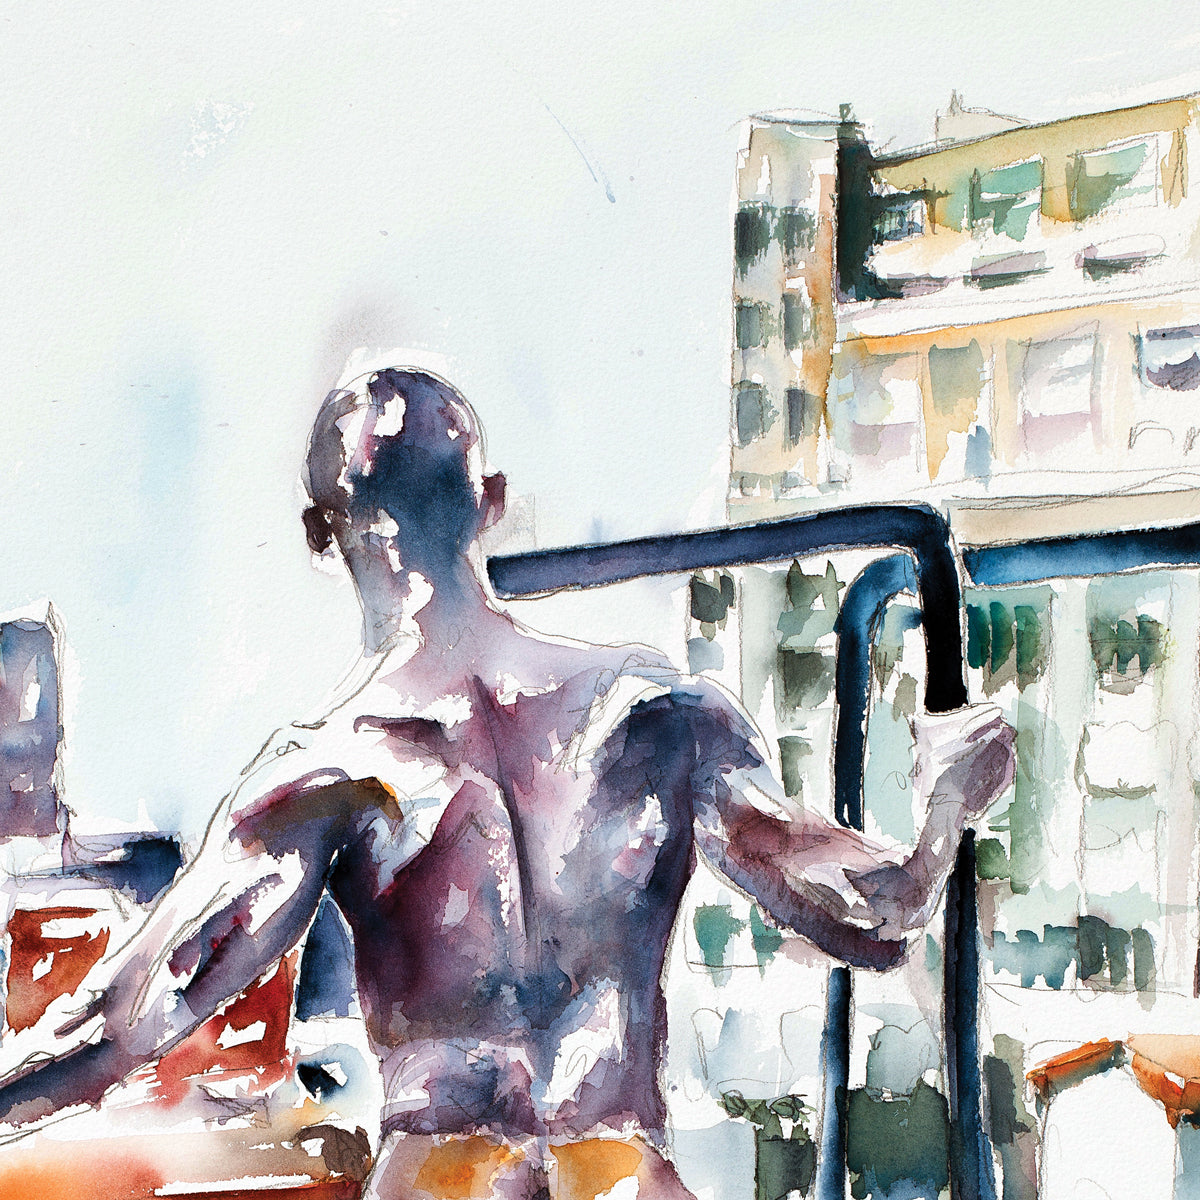 City Gaze: Muscular Male Overlooking Urban Landscape - Giclee Art Print